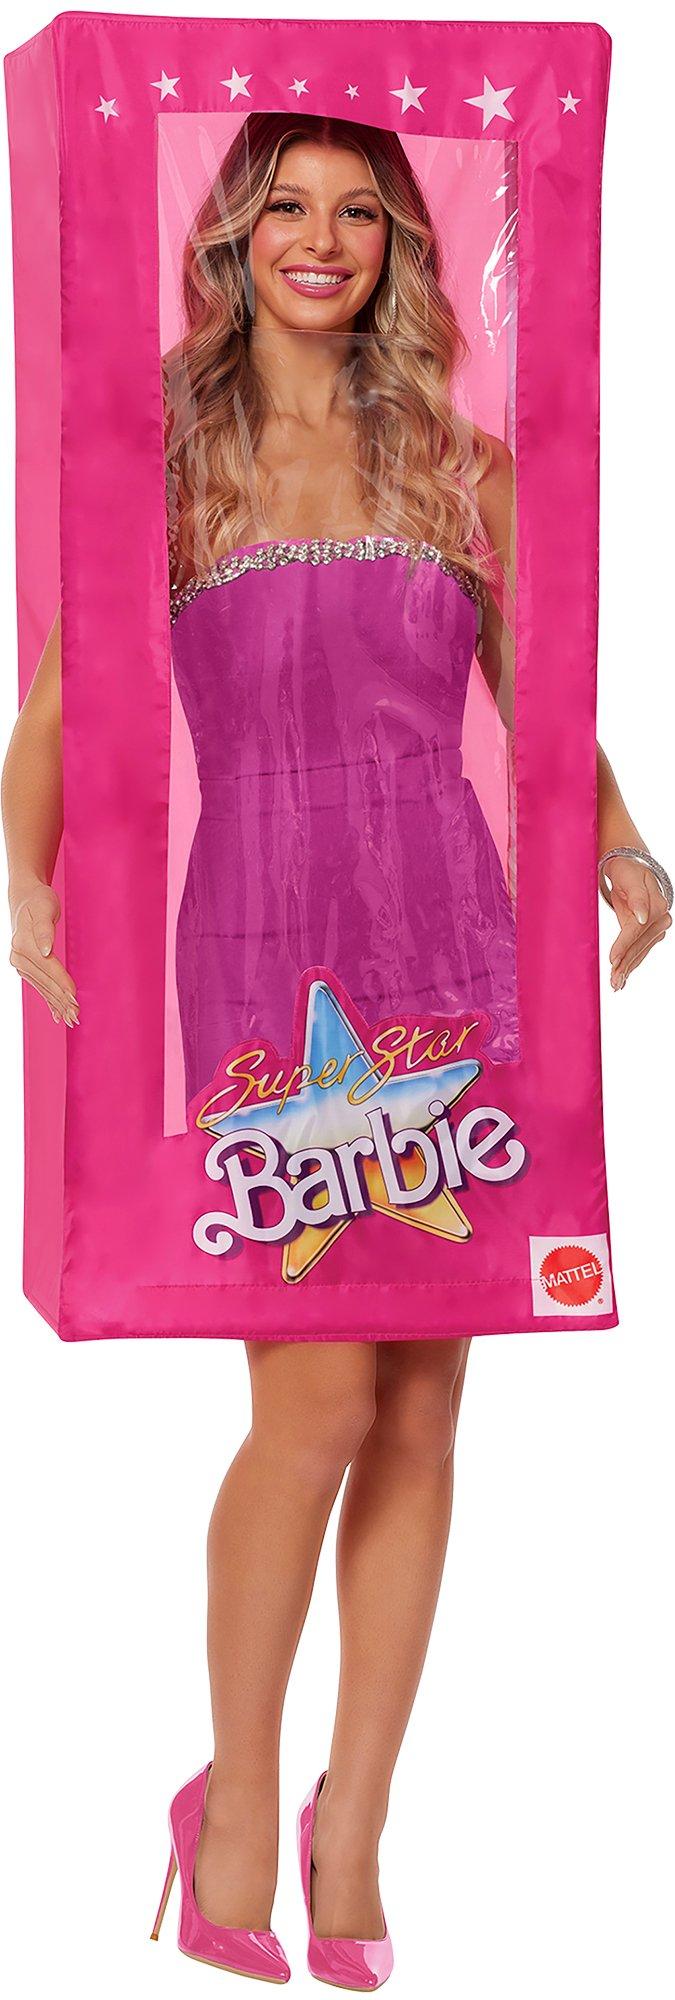 Barbie Leotard Valentines Collection 